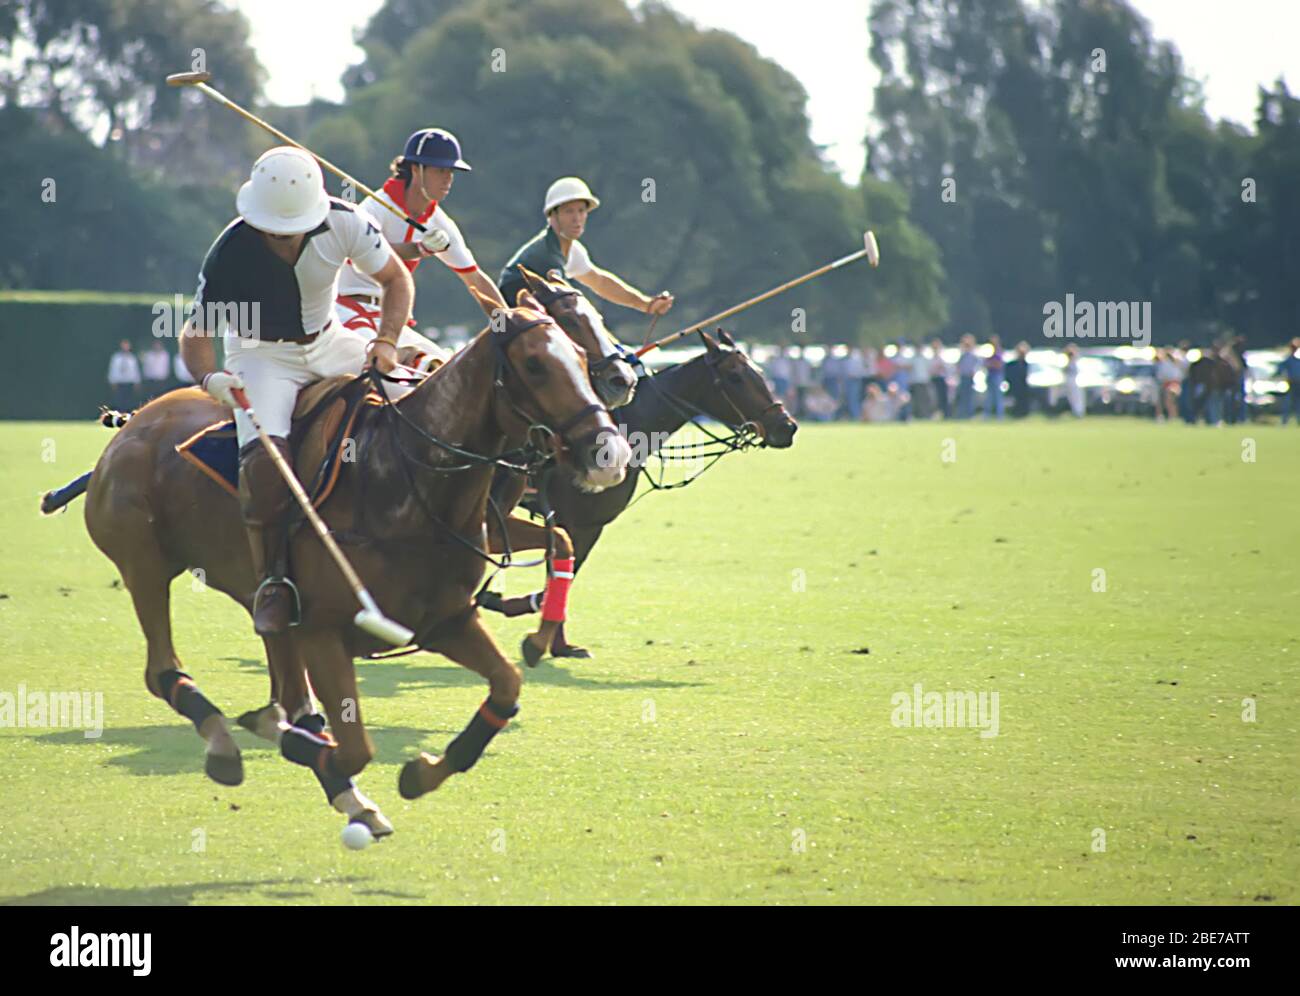 Polospieler auf dem Pferderücken während des Spiels, Buenos Aires, Argentinien Stockfoto